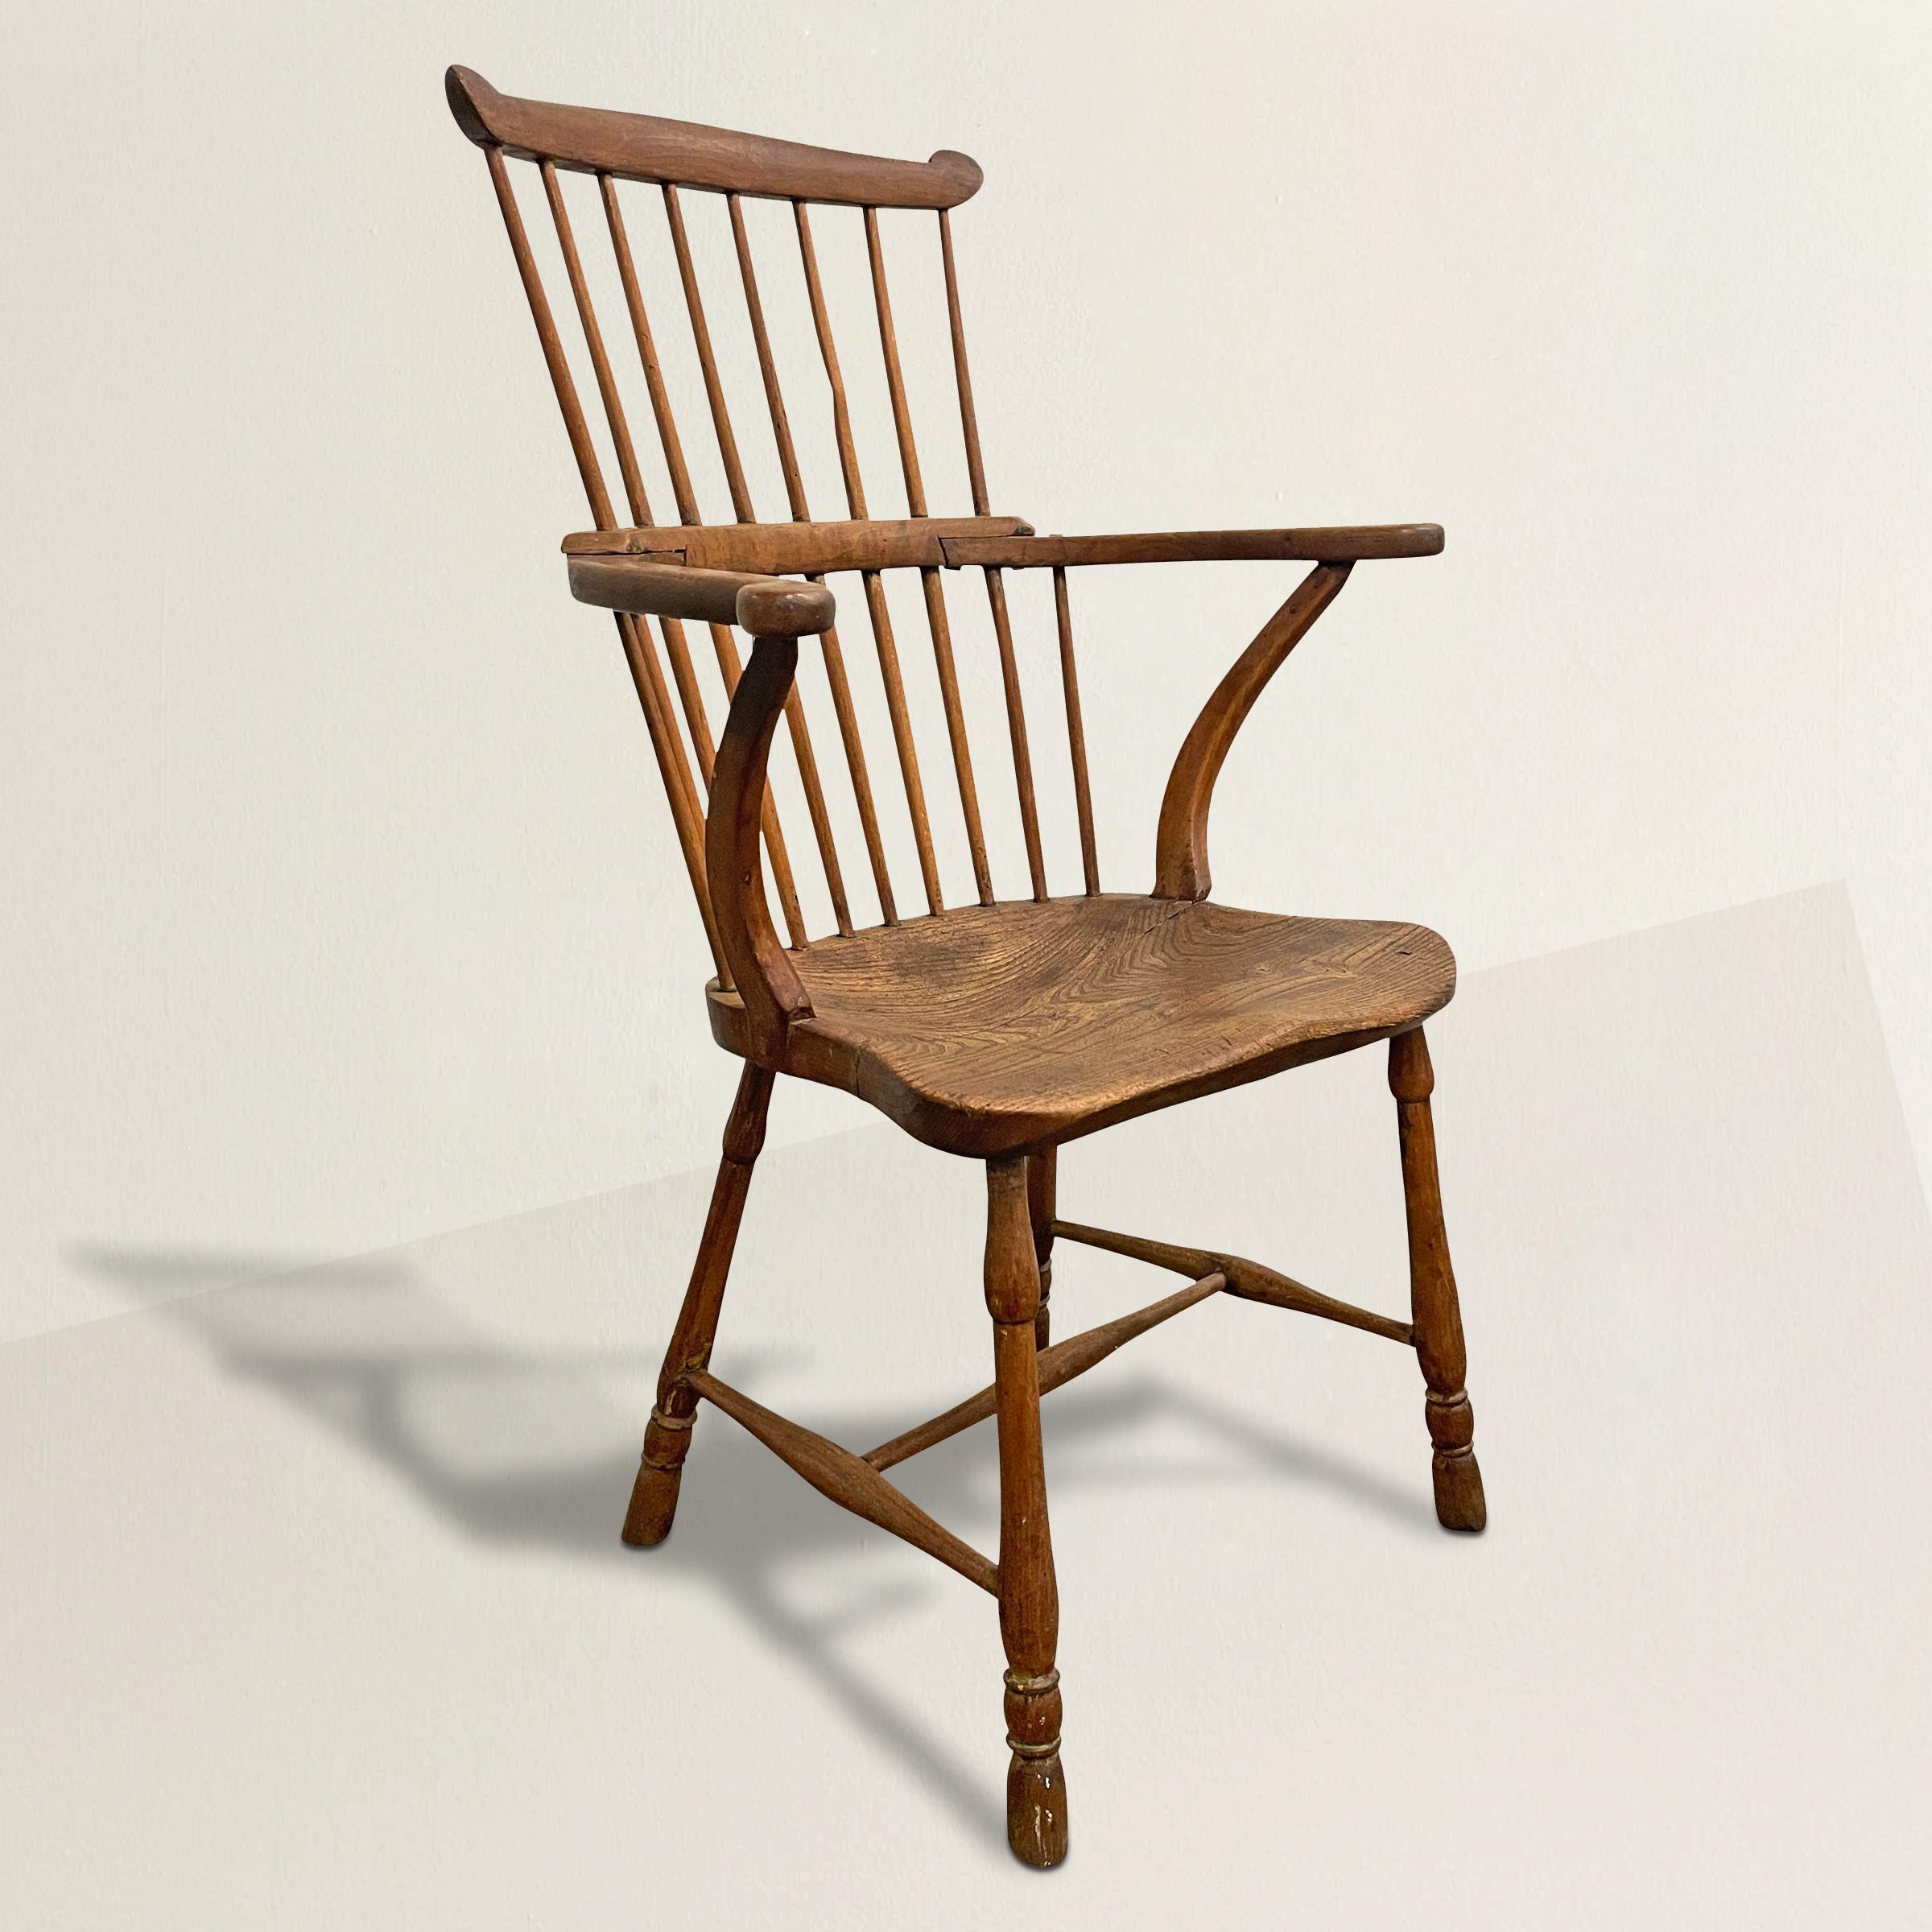 Magnifique chaise Windsor en frêne et chêne du XIXe siècle, avec des bras tournés vers l'extérieur soutenus par des brancards inversés, des pieds tournés reliés par un brancard en bois courbé, et une assise en chêne massif. Le siège est une seule